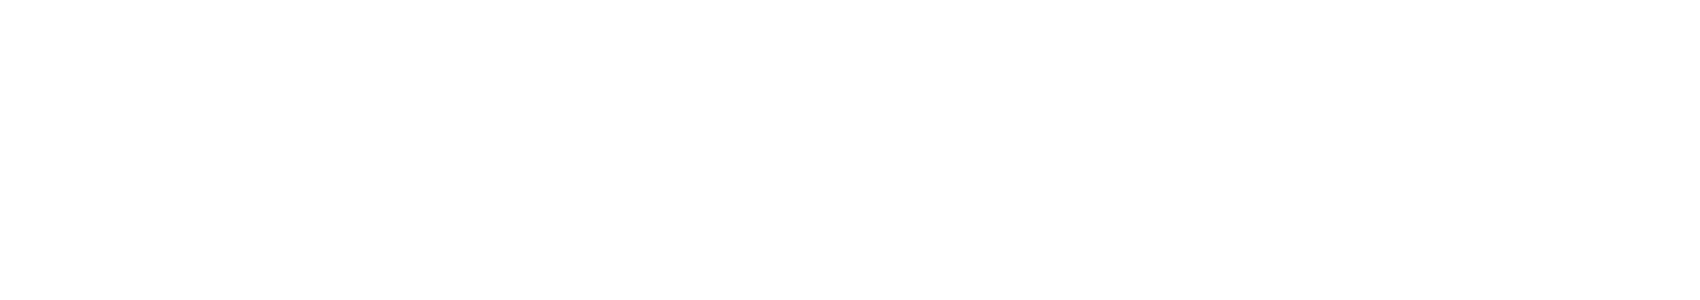 احمد حمدي stylish signature style. Best Handwritten Sign (Antro_Vectra_Bolder) for my name. Handwritten Signature Collection Ideas for my name احمد حمدي. احمد حمدي signature style 7 images and pictures png